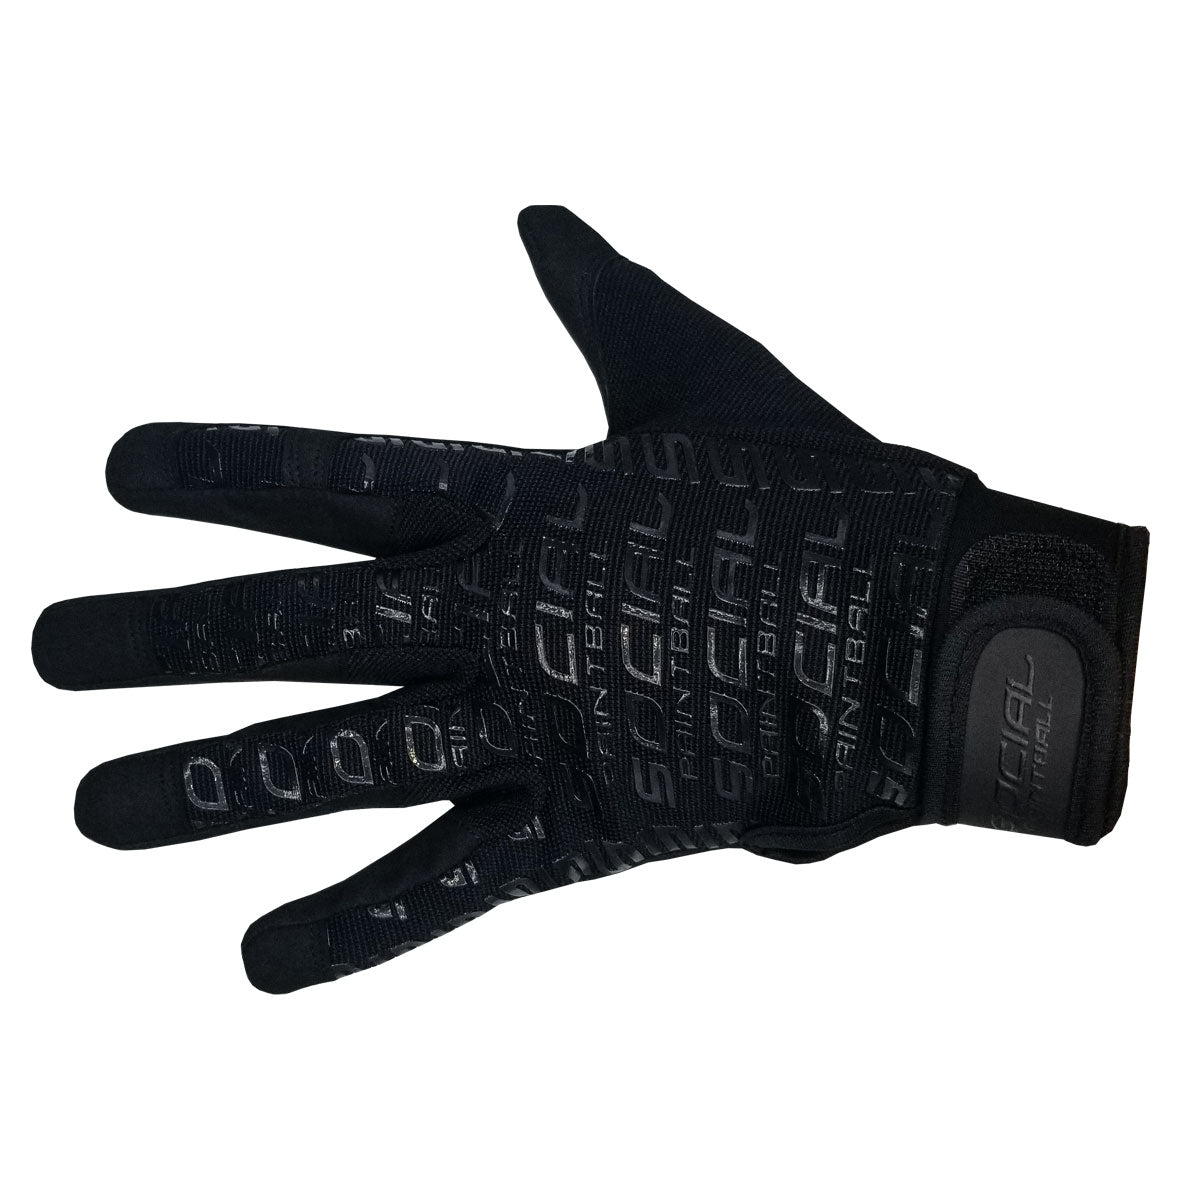 Smpl Gloves, Black